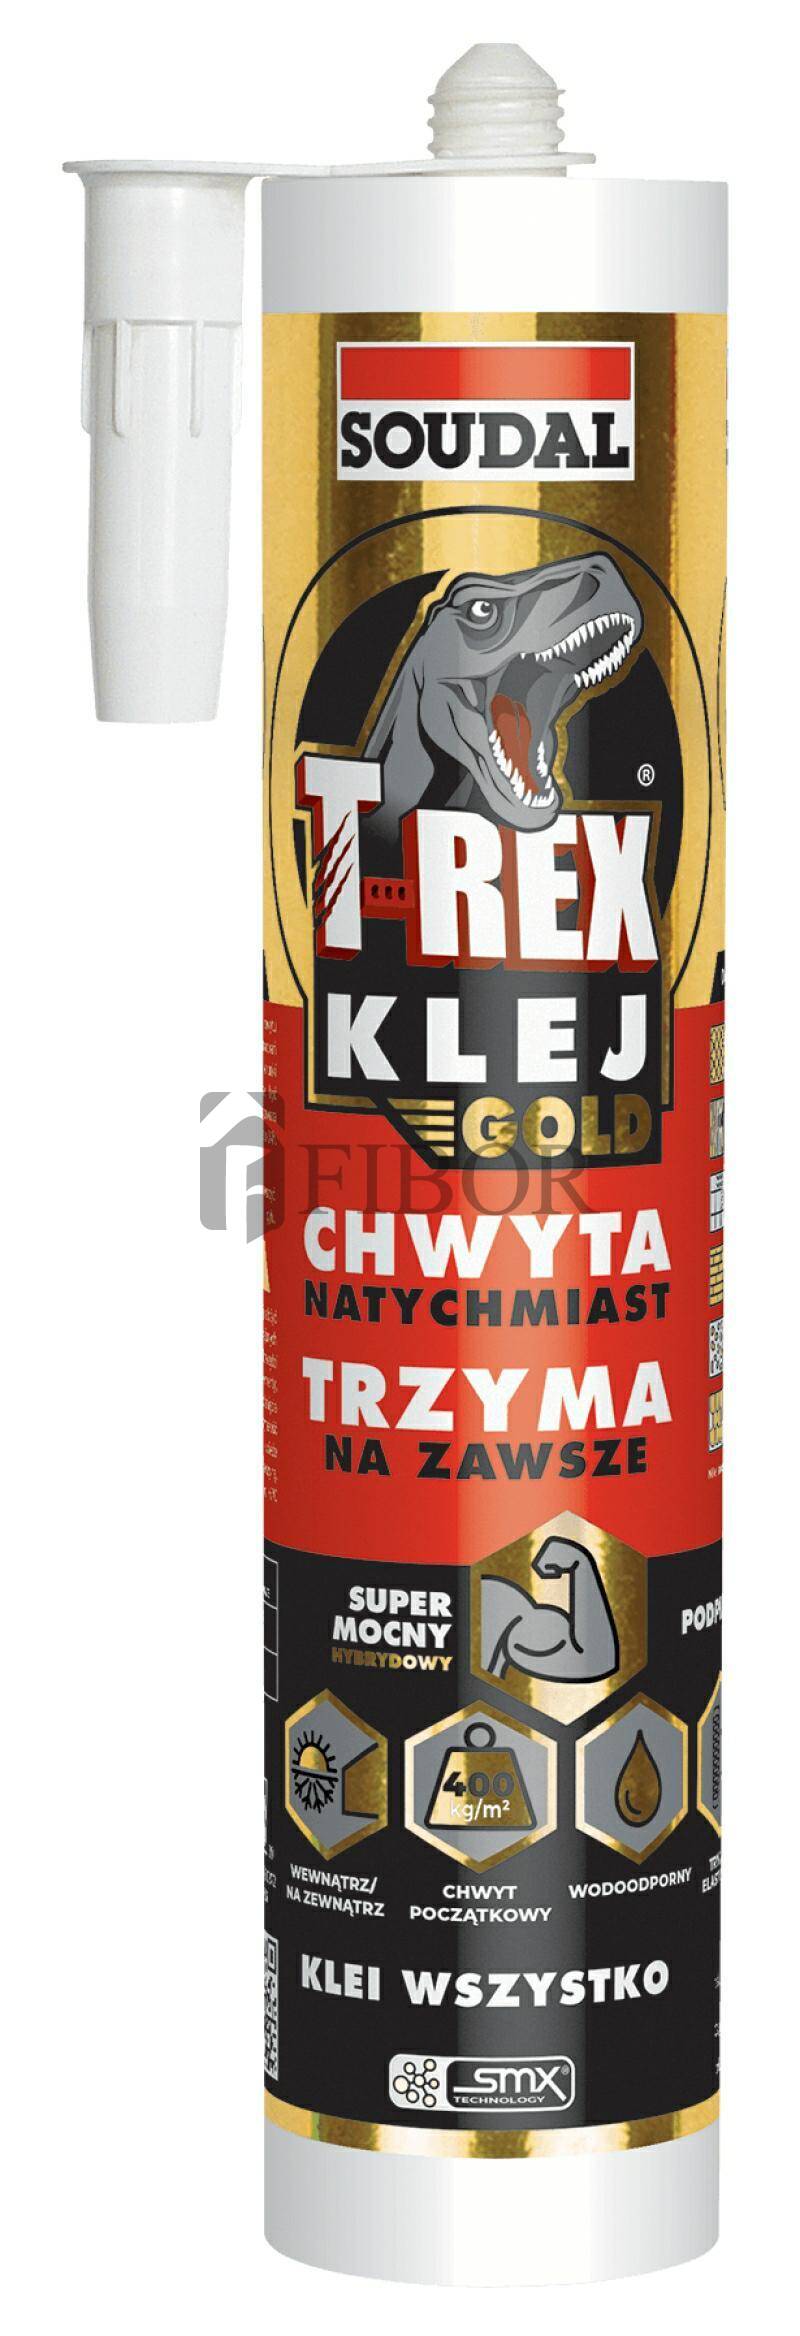 Klej HYBRYDOWY T-REX GOLD 290ml